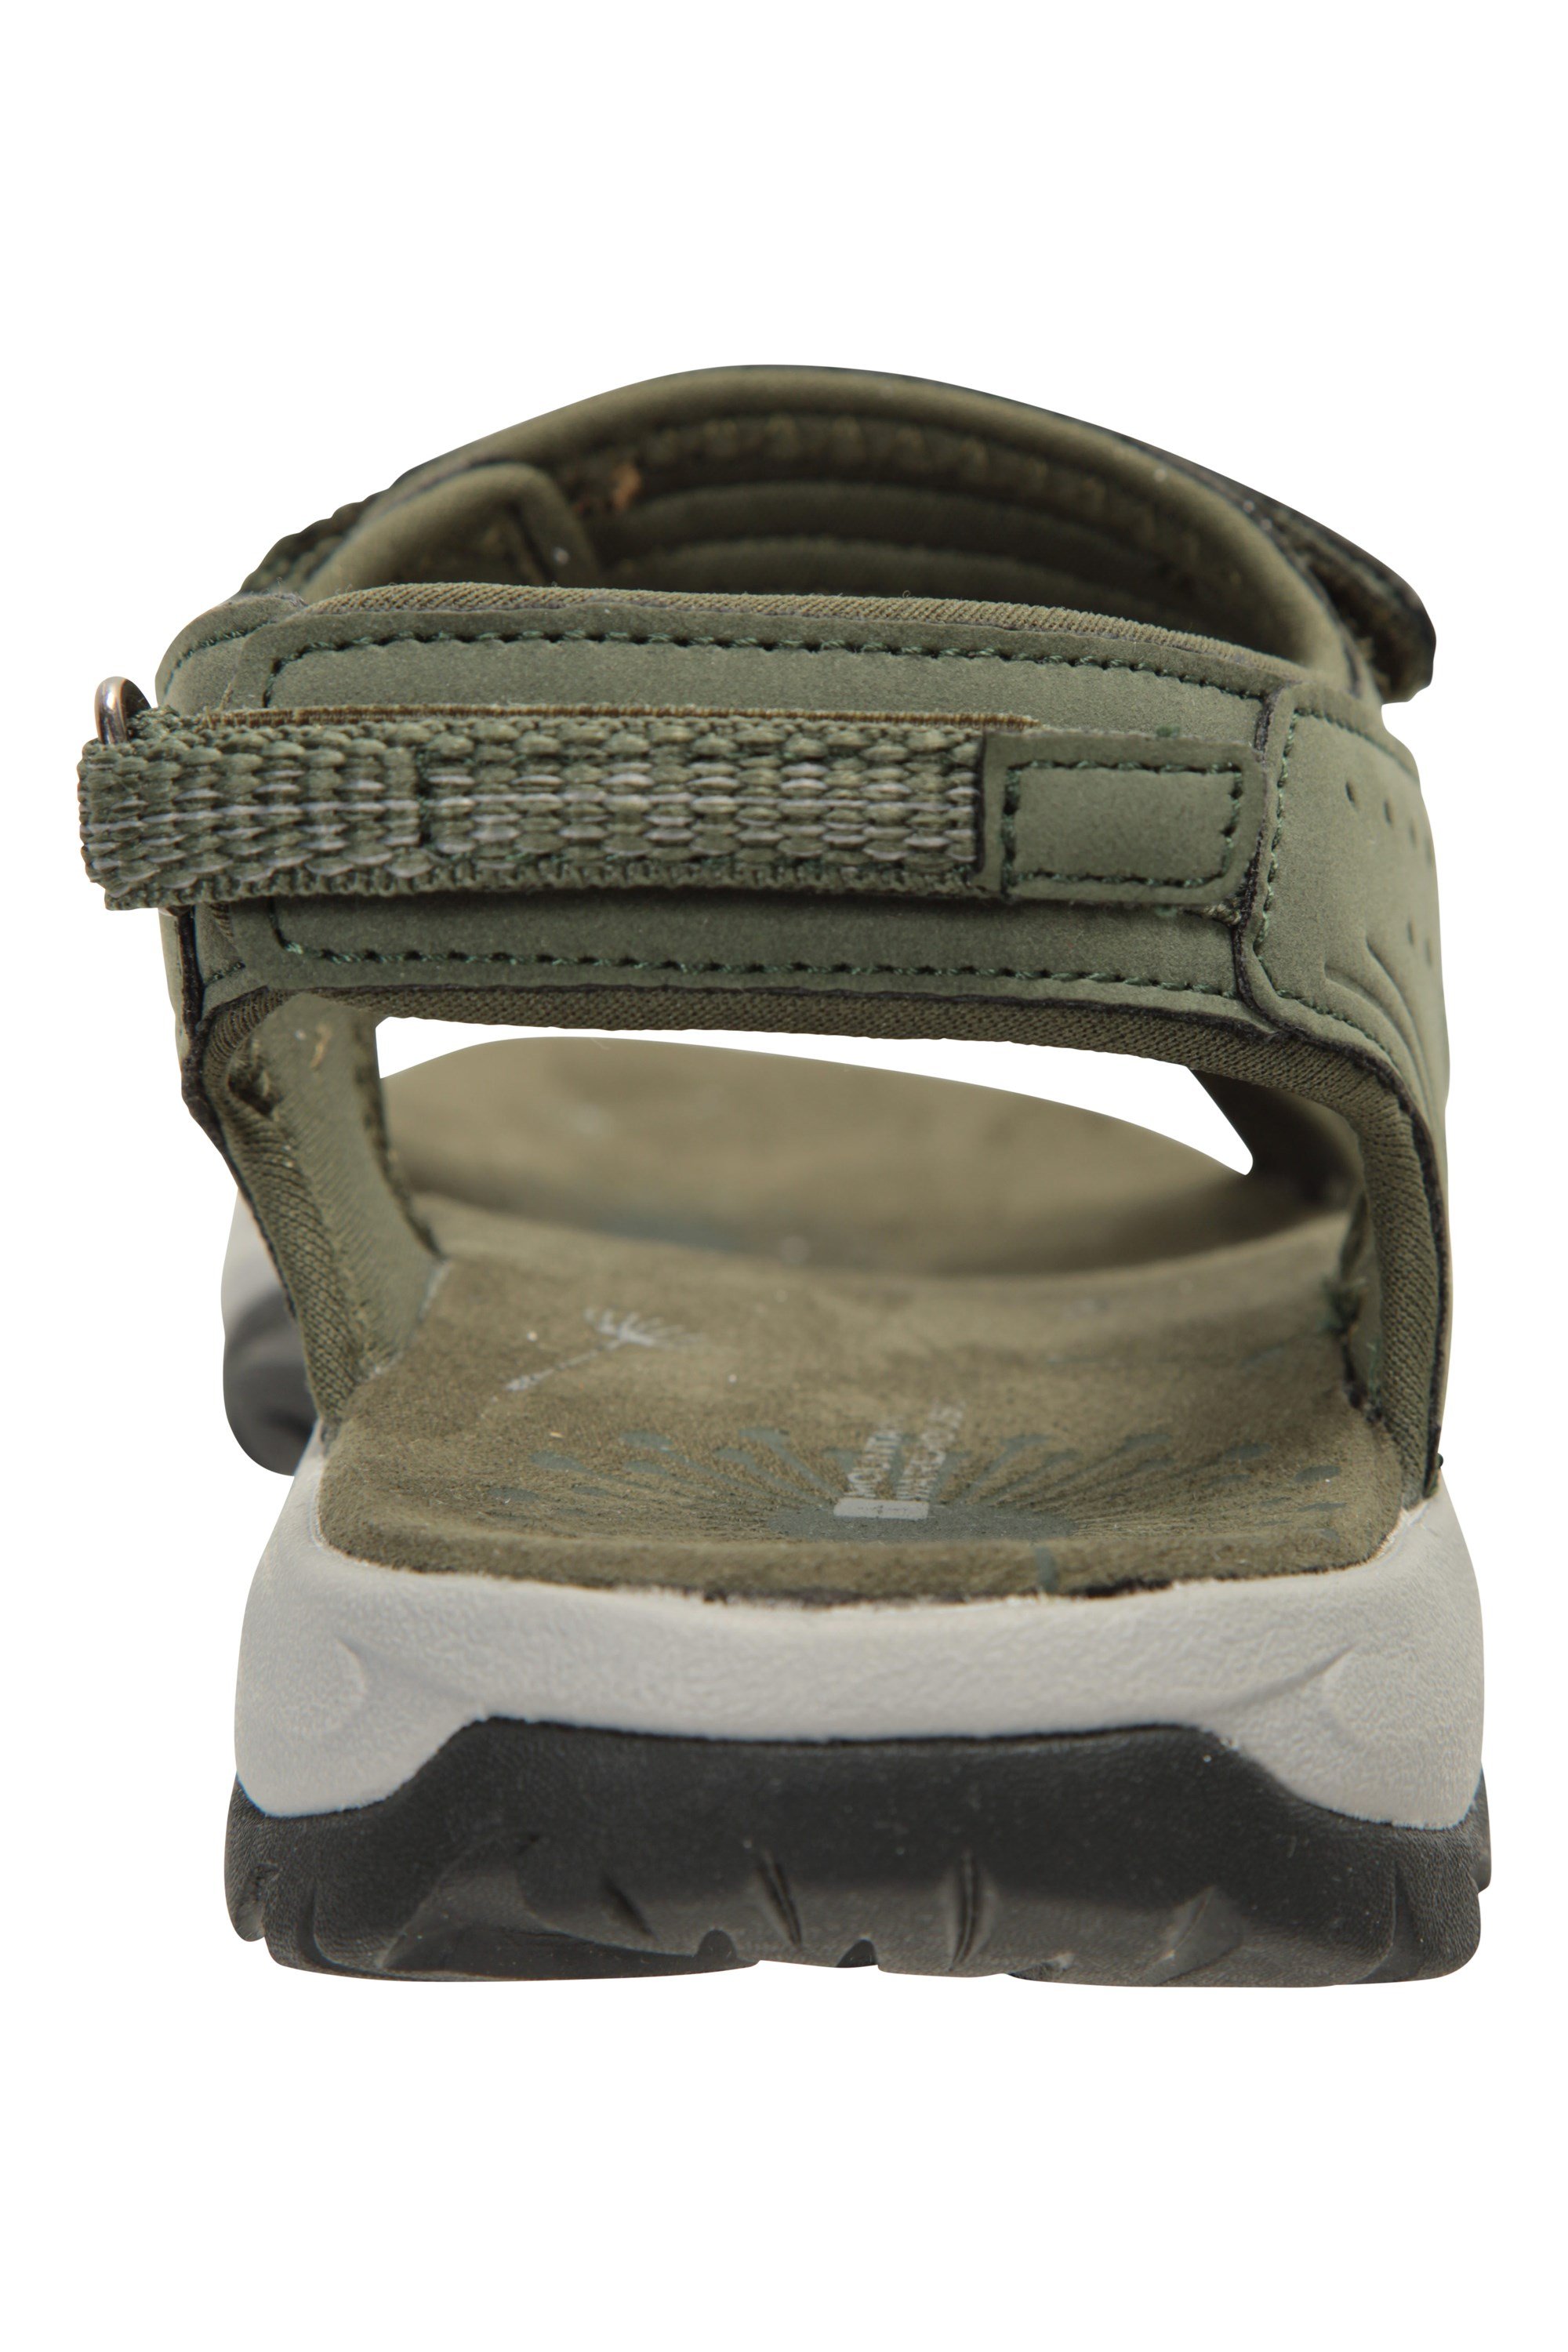 Mountain Warehouse Journey Vibram-Wandersandalen für Damen – atmungsaktive Damenschuhe Schuhe mit Neoprenfutter Fitnessstudio verstellbare Riemen – ideal für Sport 